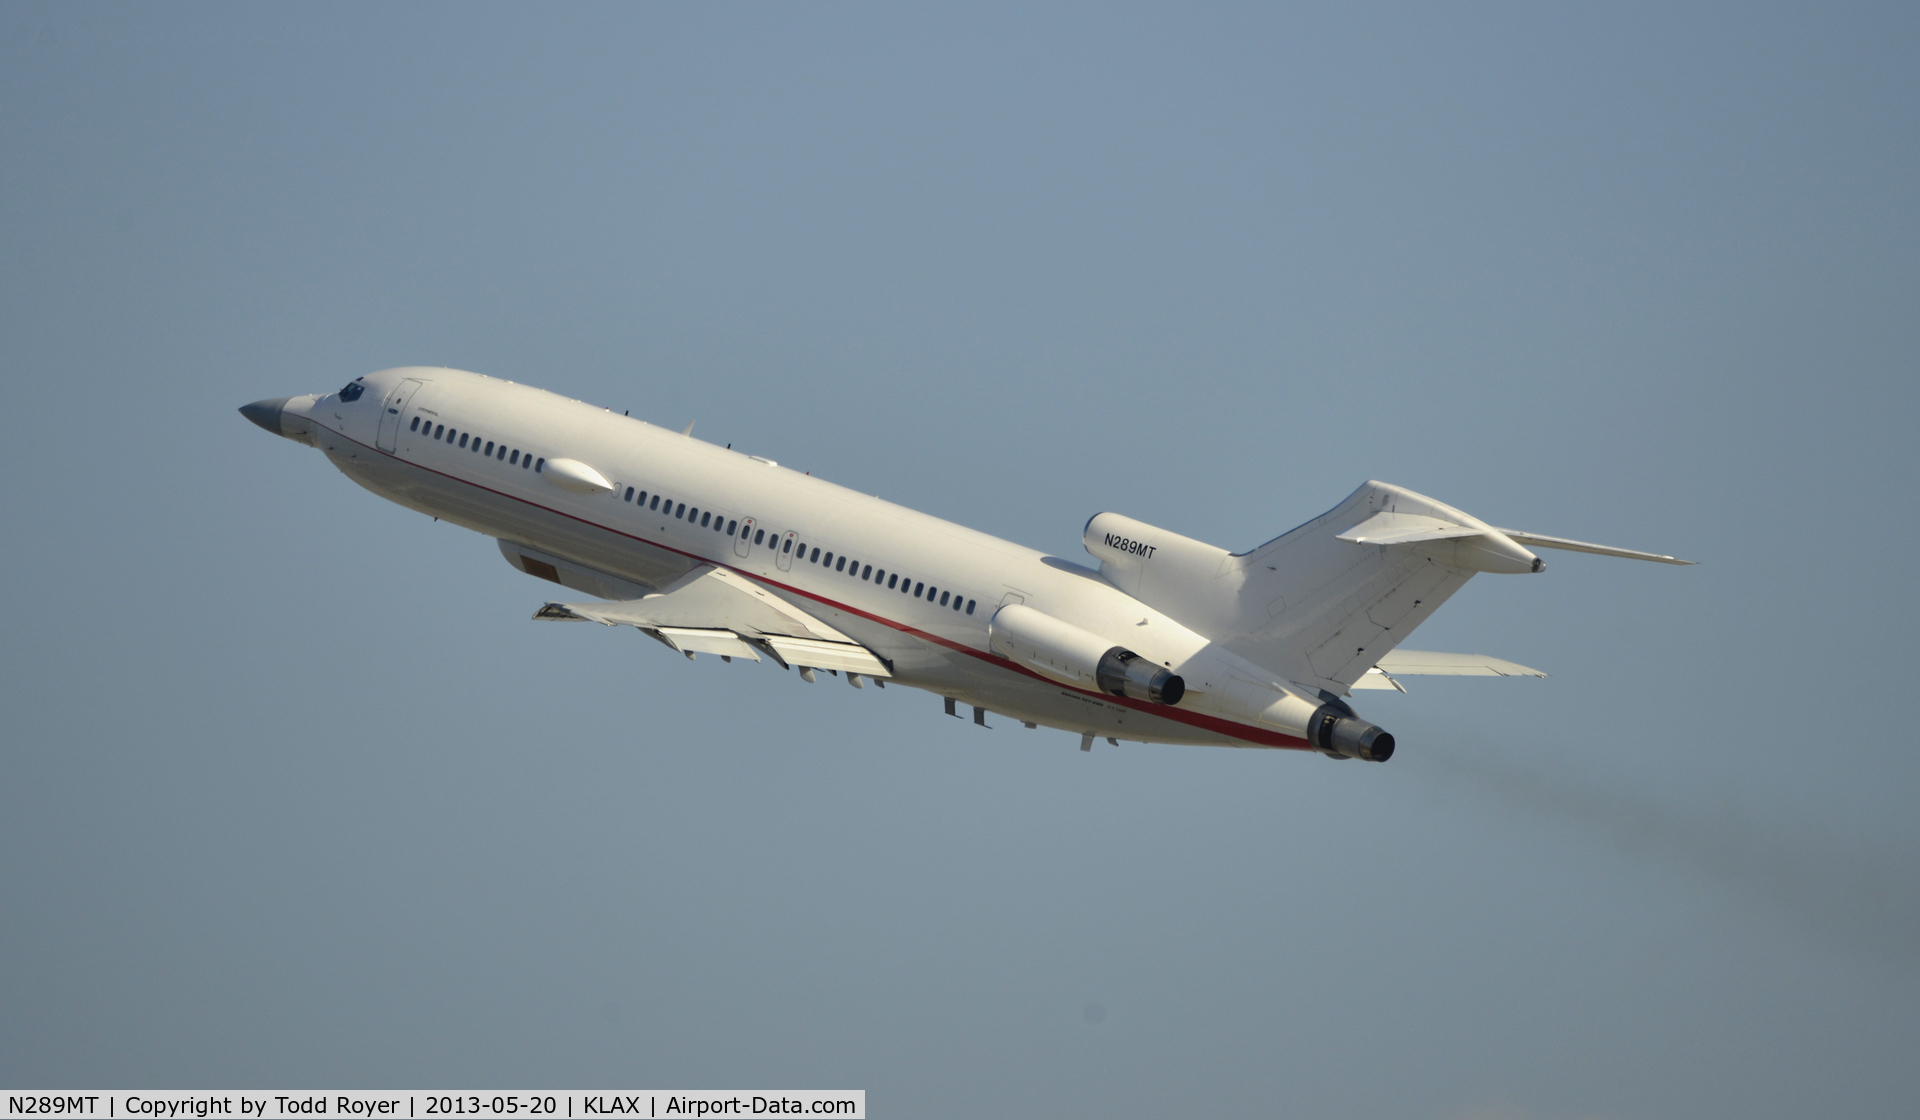 N289MT, 1981 Boeing 727-223 C/N 22467, Smokey departure from LAX